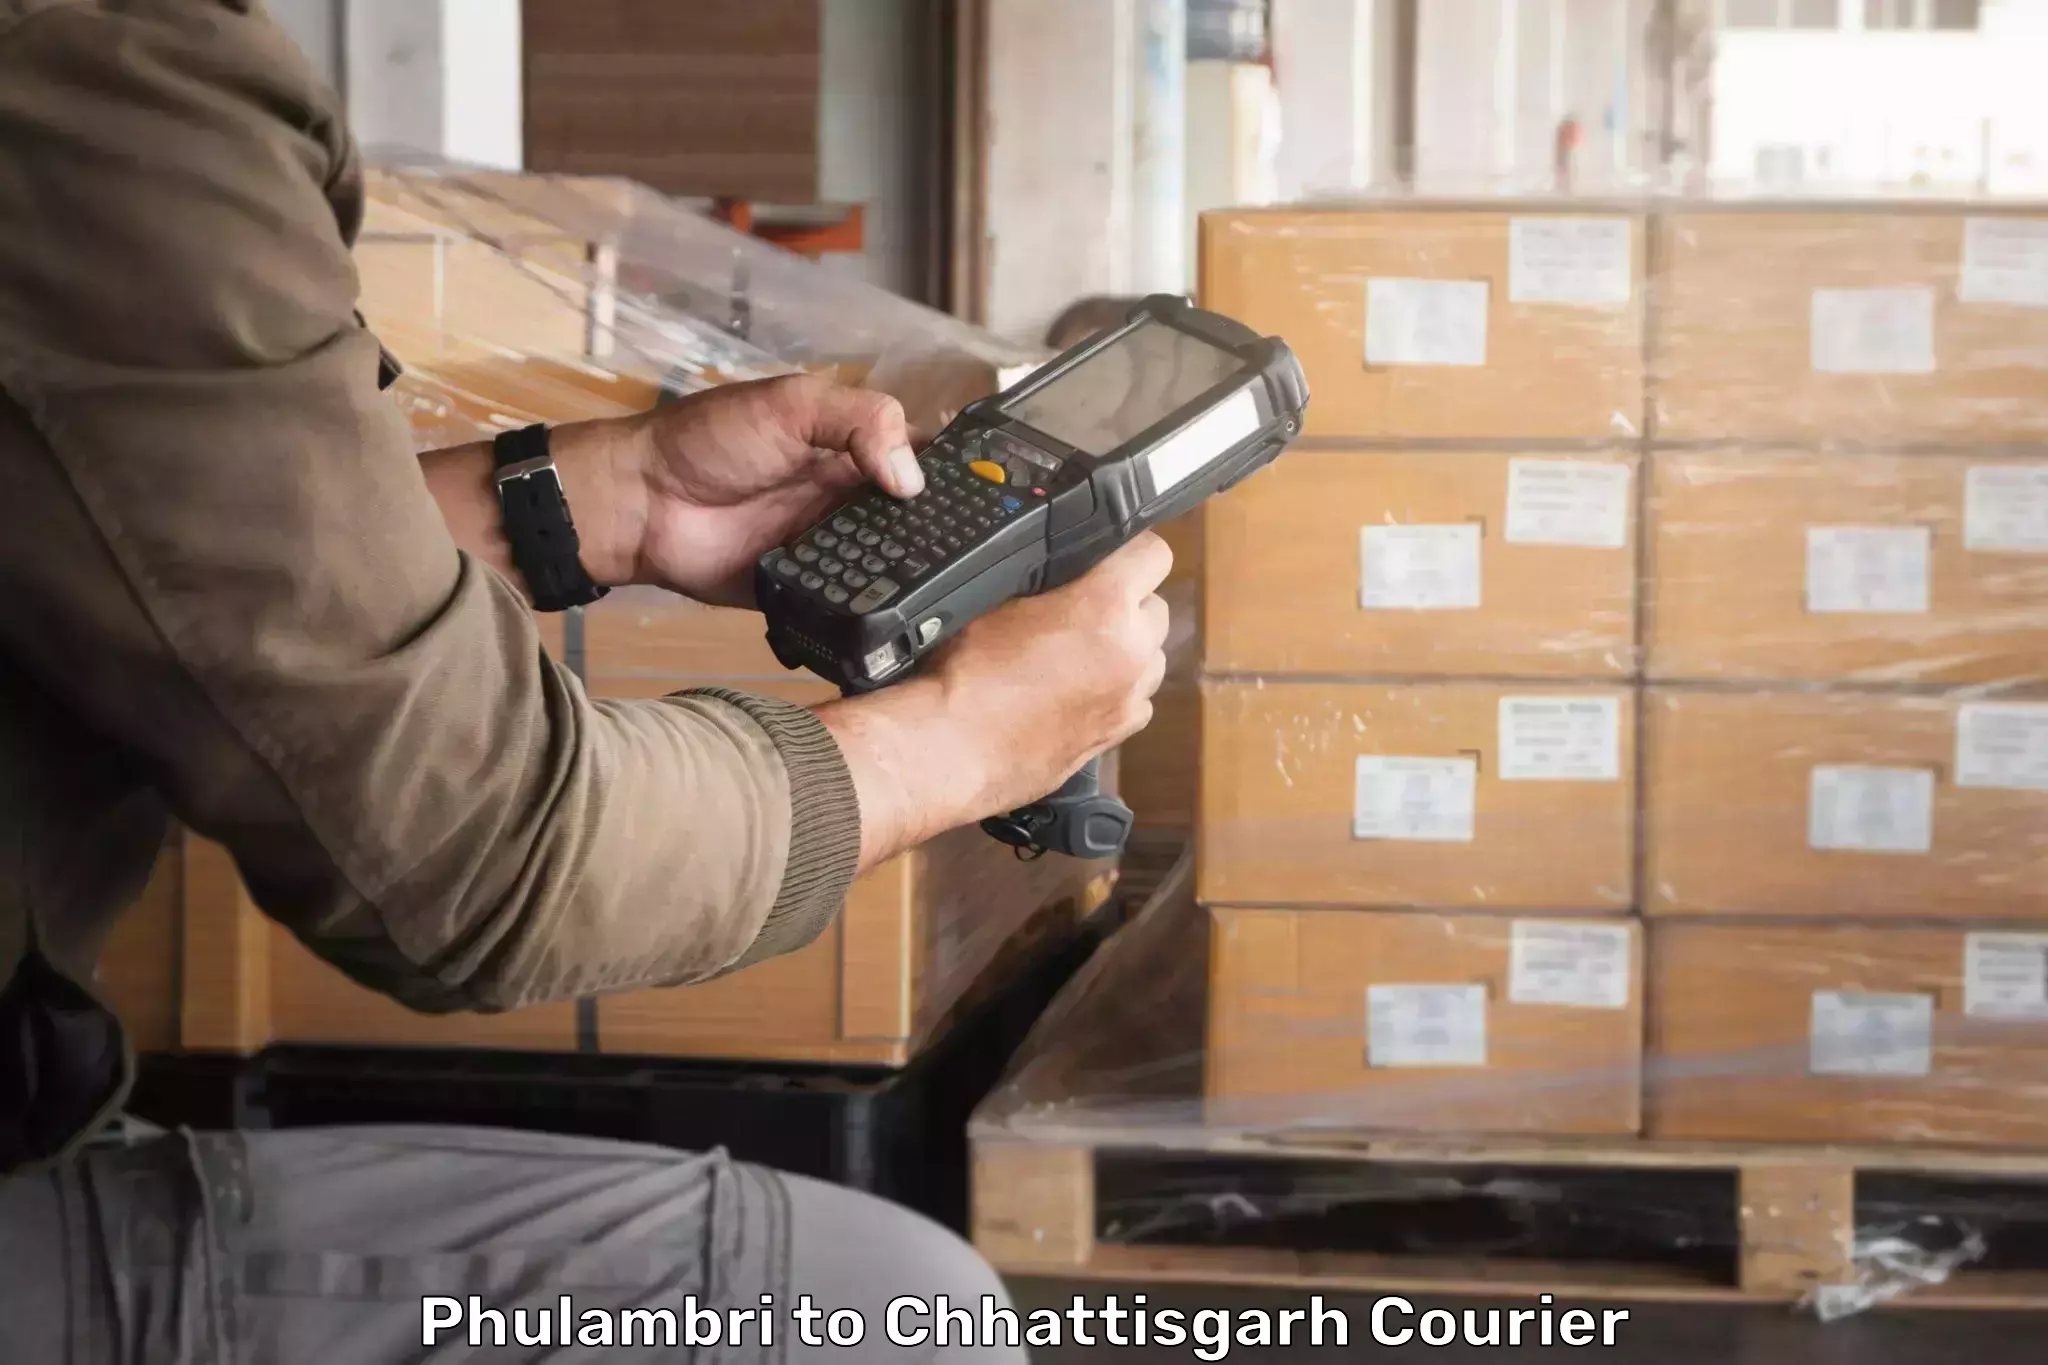 Local delivery service Phulambri to Korea Chhattisgarh